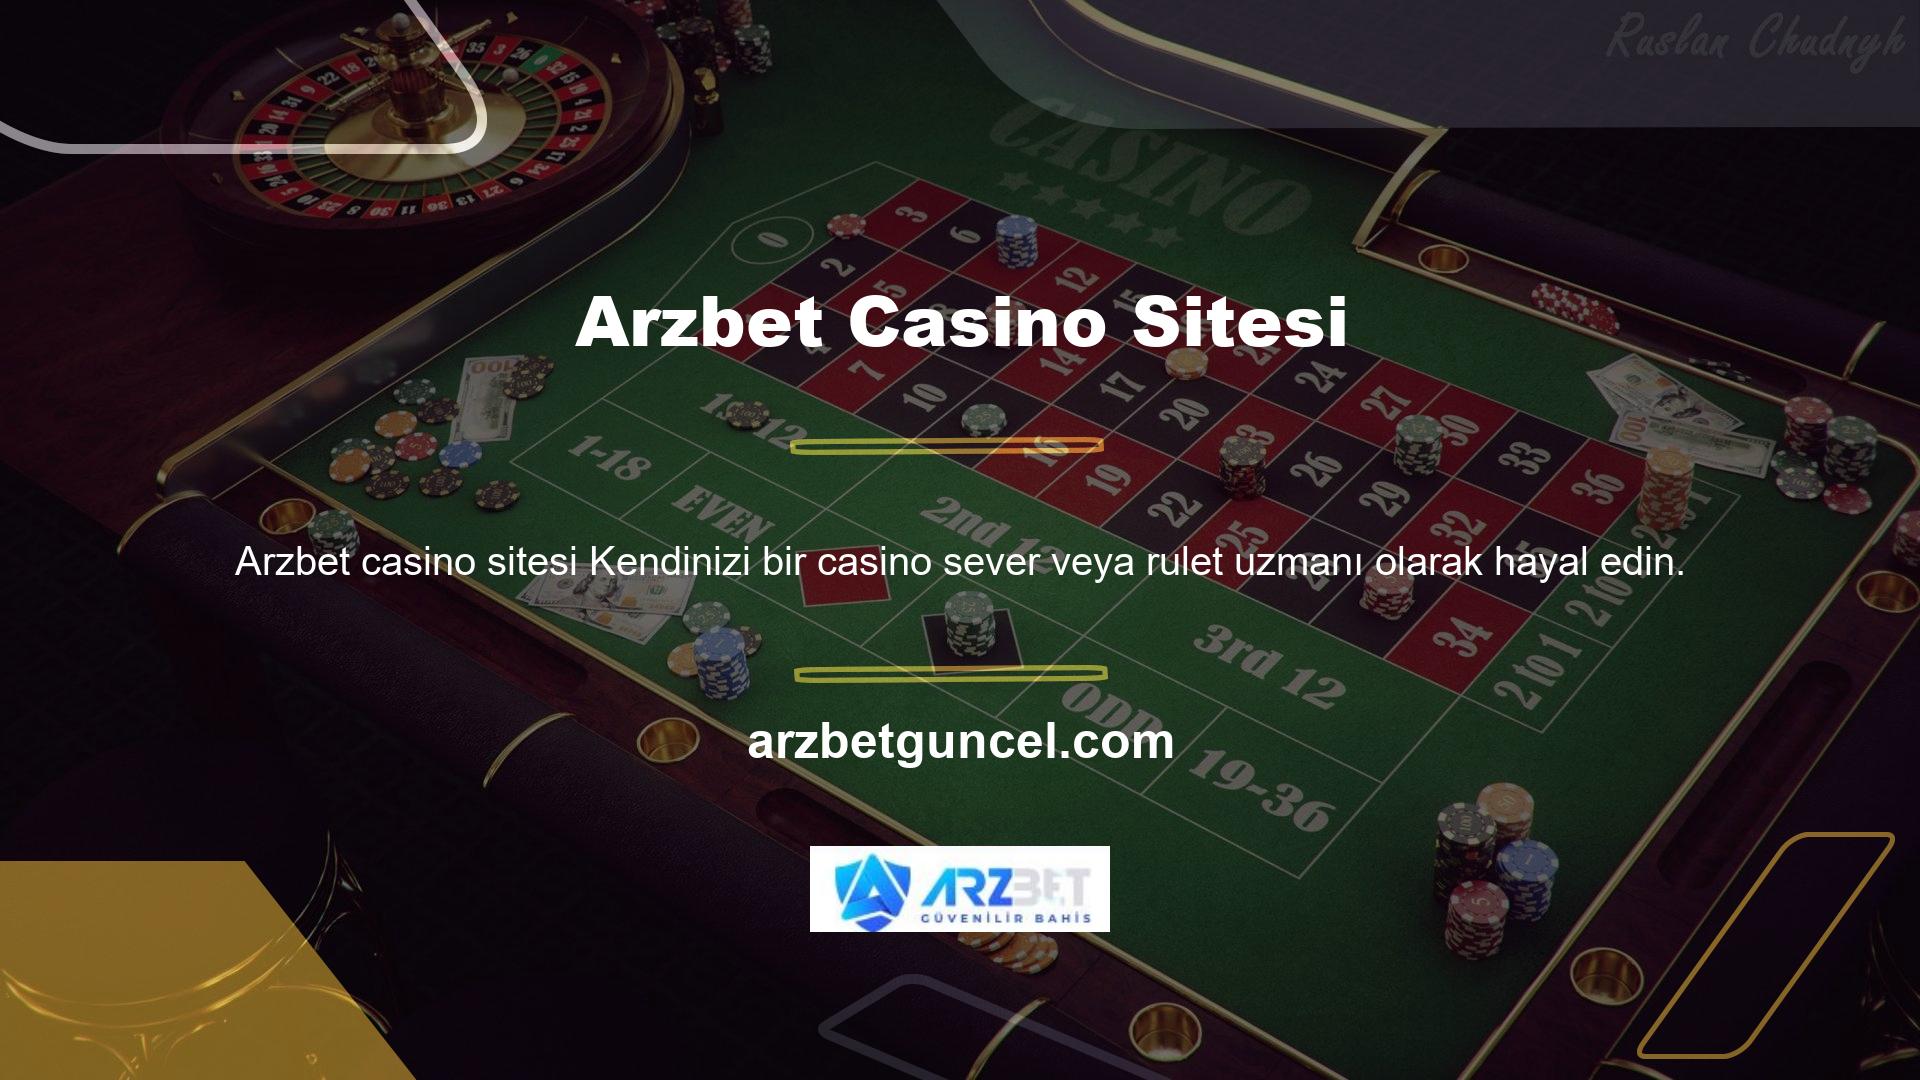 Biz senin için buradayız Arzbet, blackjack ve rulet gibi en iyi casino oyunlarını sunar